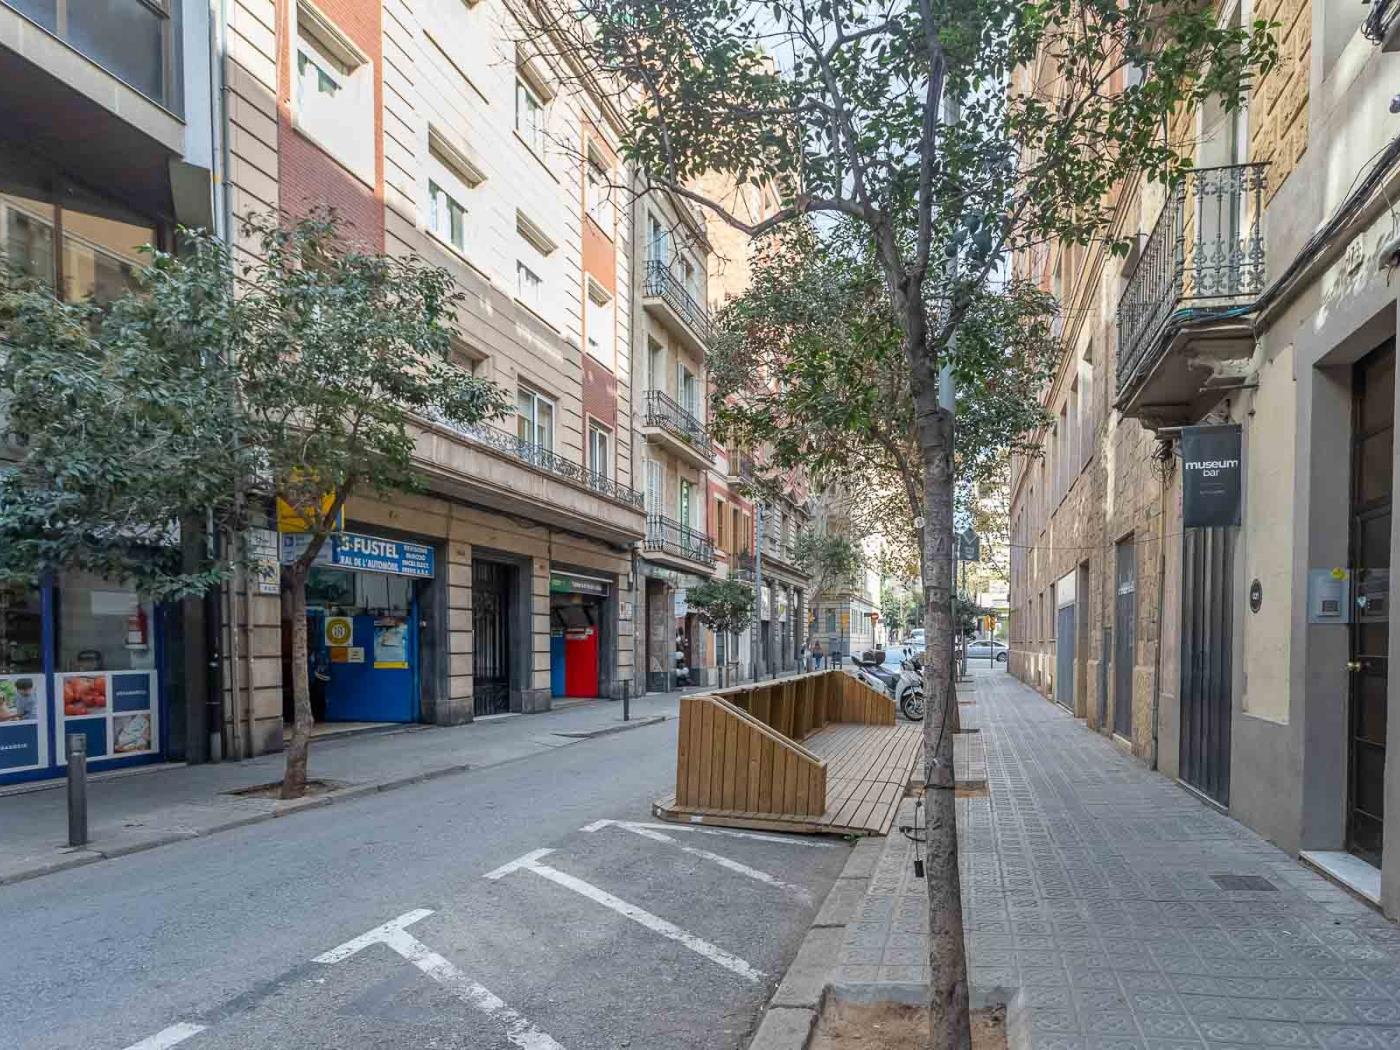 My Space Barcelona Industrie-Loft mit privater Terrasse in Sant Gervasi für 5 - My Space Barcelona Appartementen